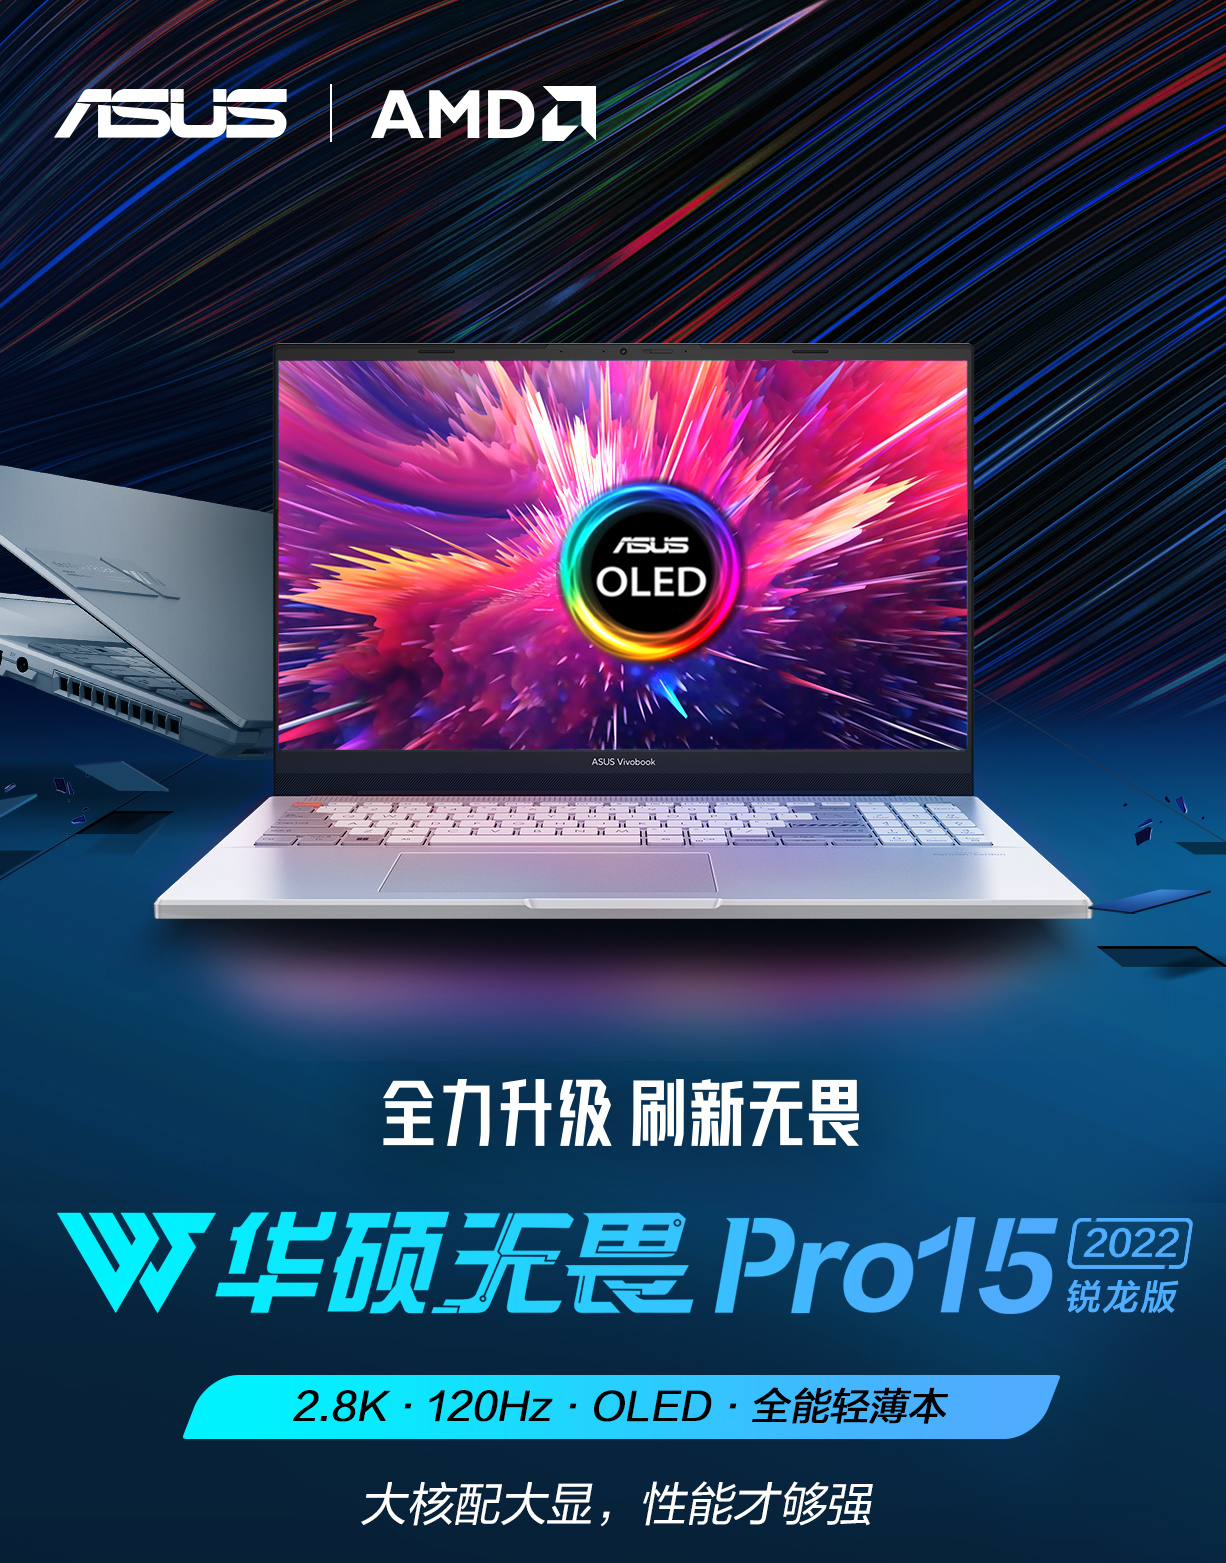 华硕无畏 Pro15 2022 的锐龙版搭载锐龙 7-6800H 处理器，首发 8299 元